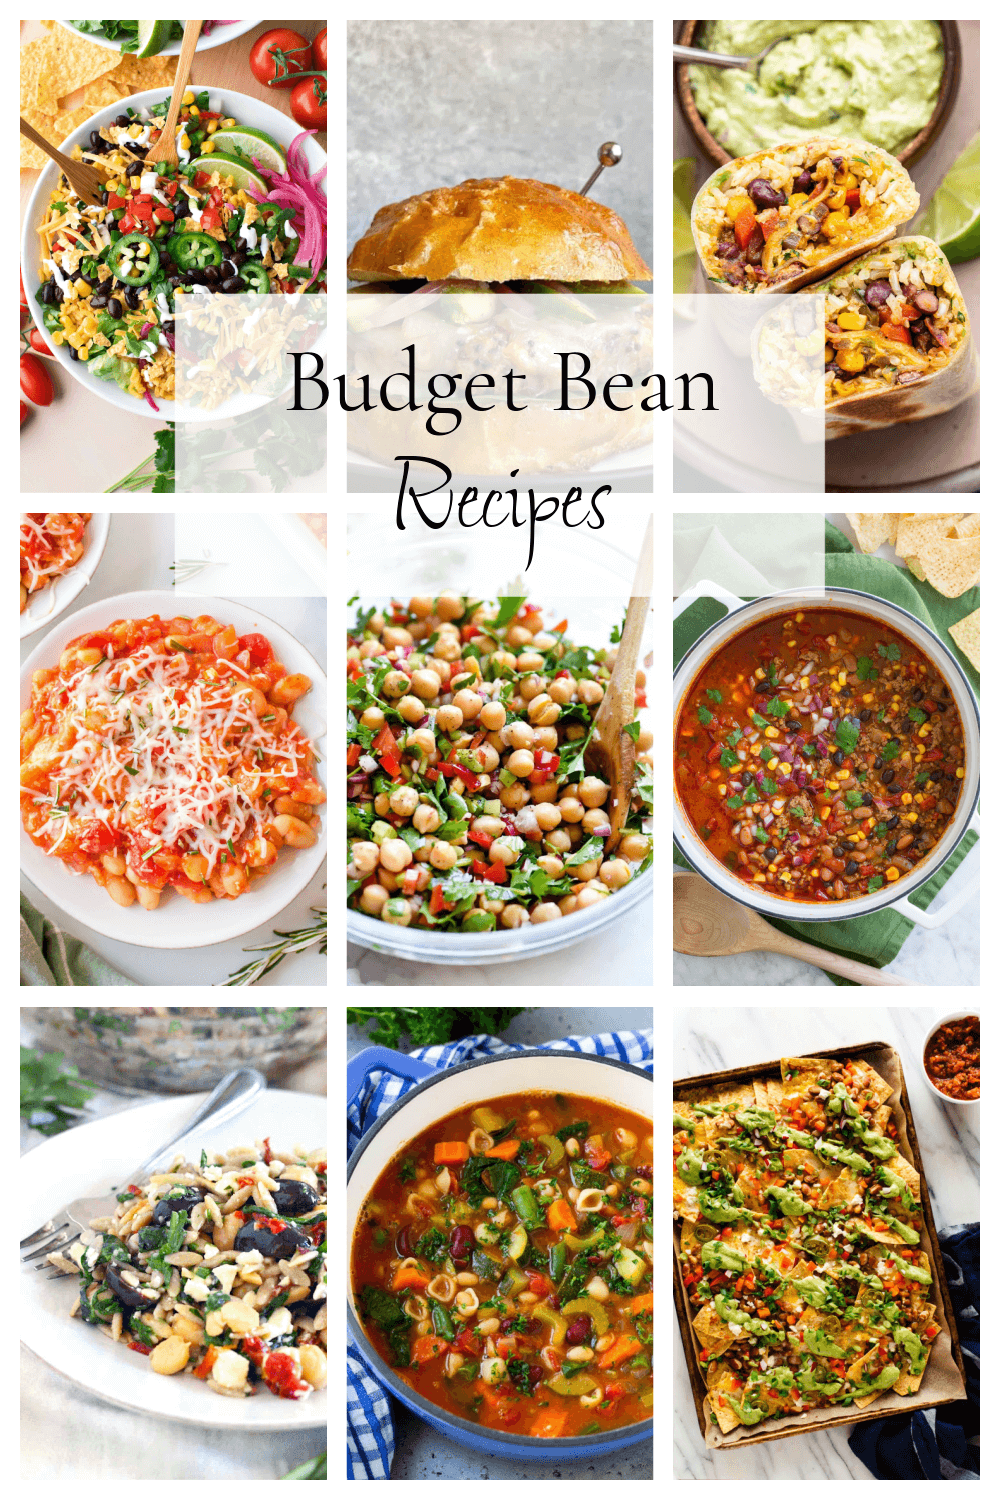 Budget Bean Recipes